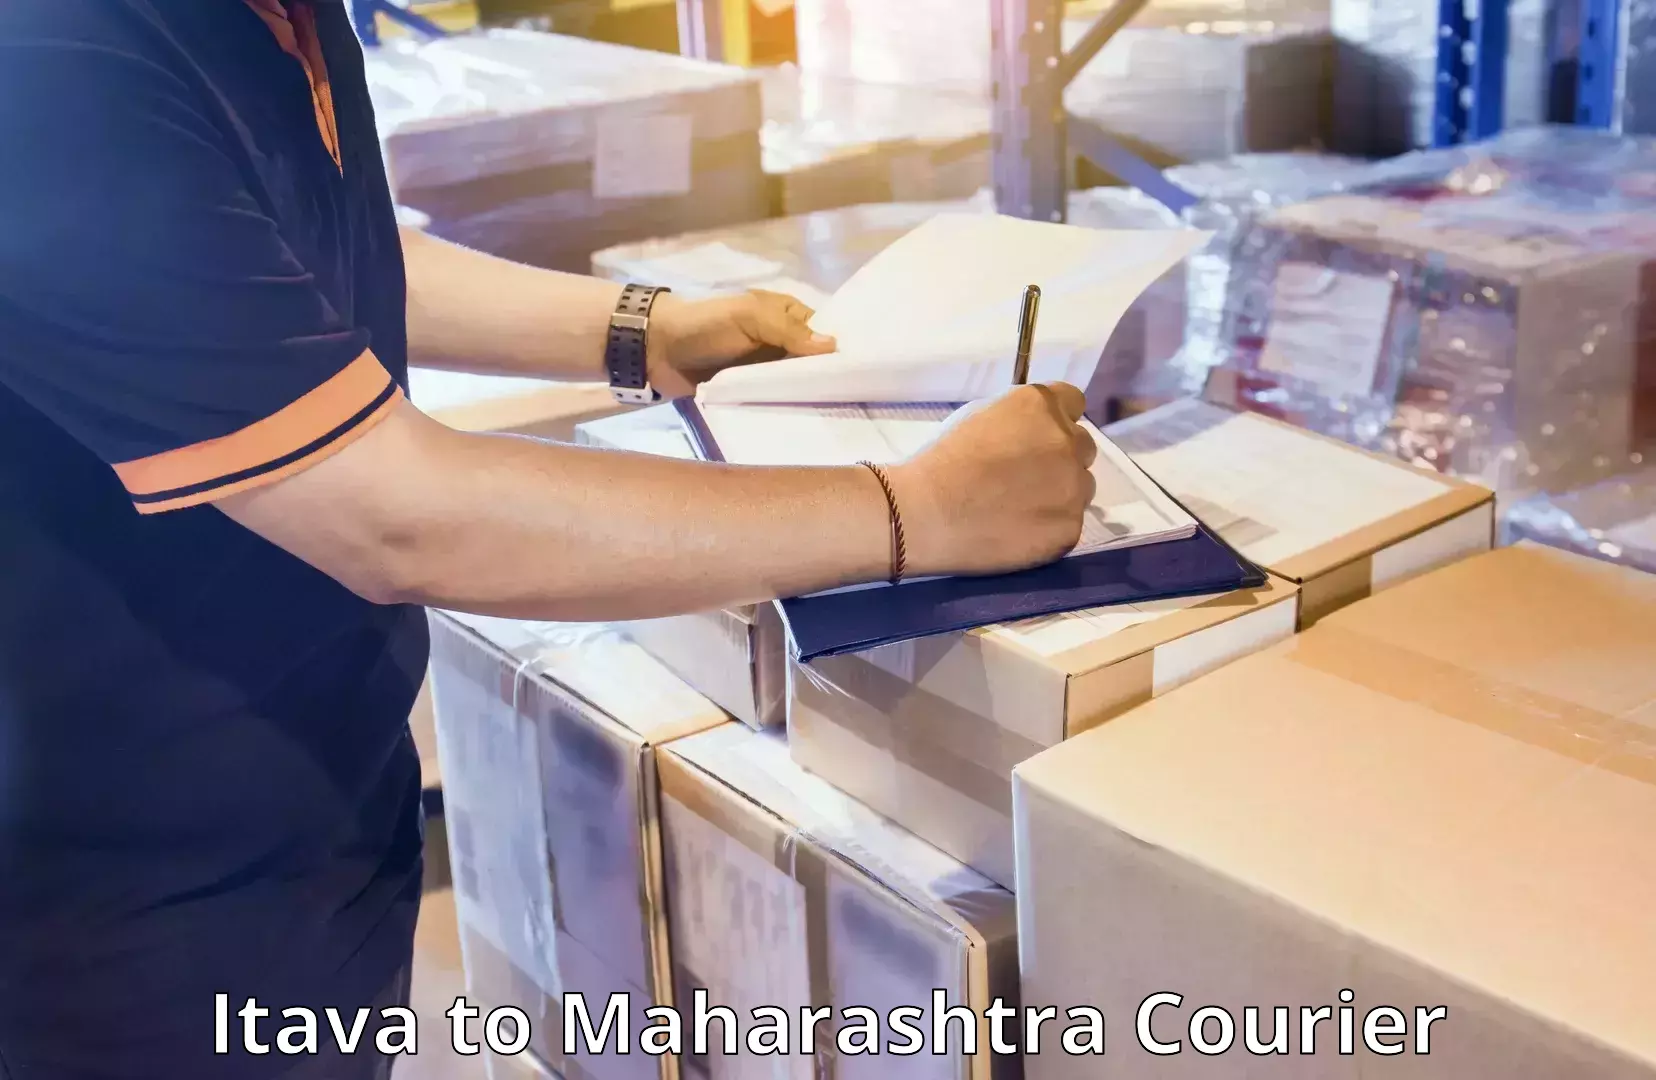 Hassle-free luggage shipping Itava to Maharashtra